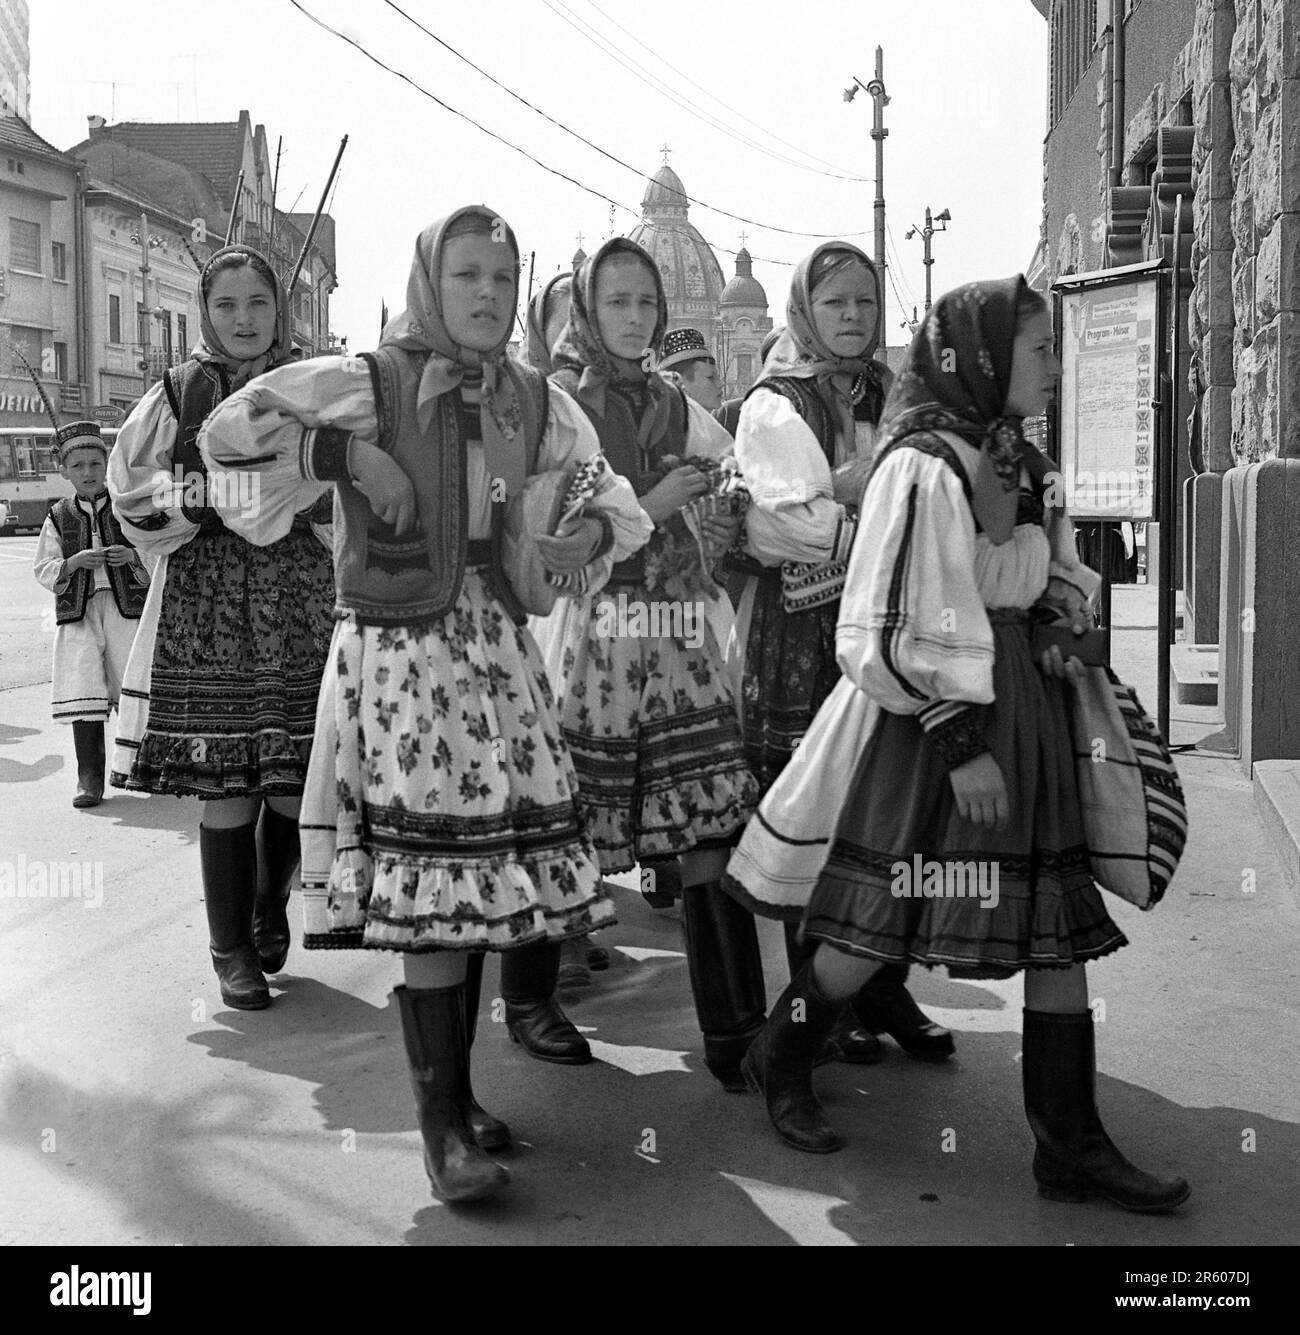 Maramures County, Rumänien, ca. 1980. Einheimische Mädchen in traditioneller Kleidung auf einer Straße der Stadt. Stockfoto